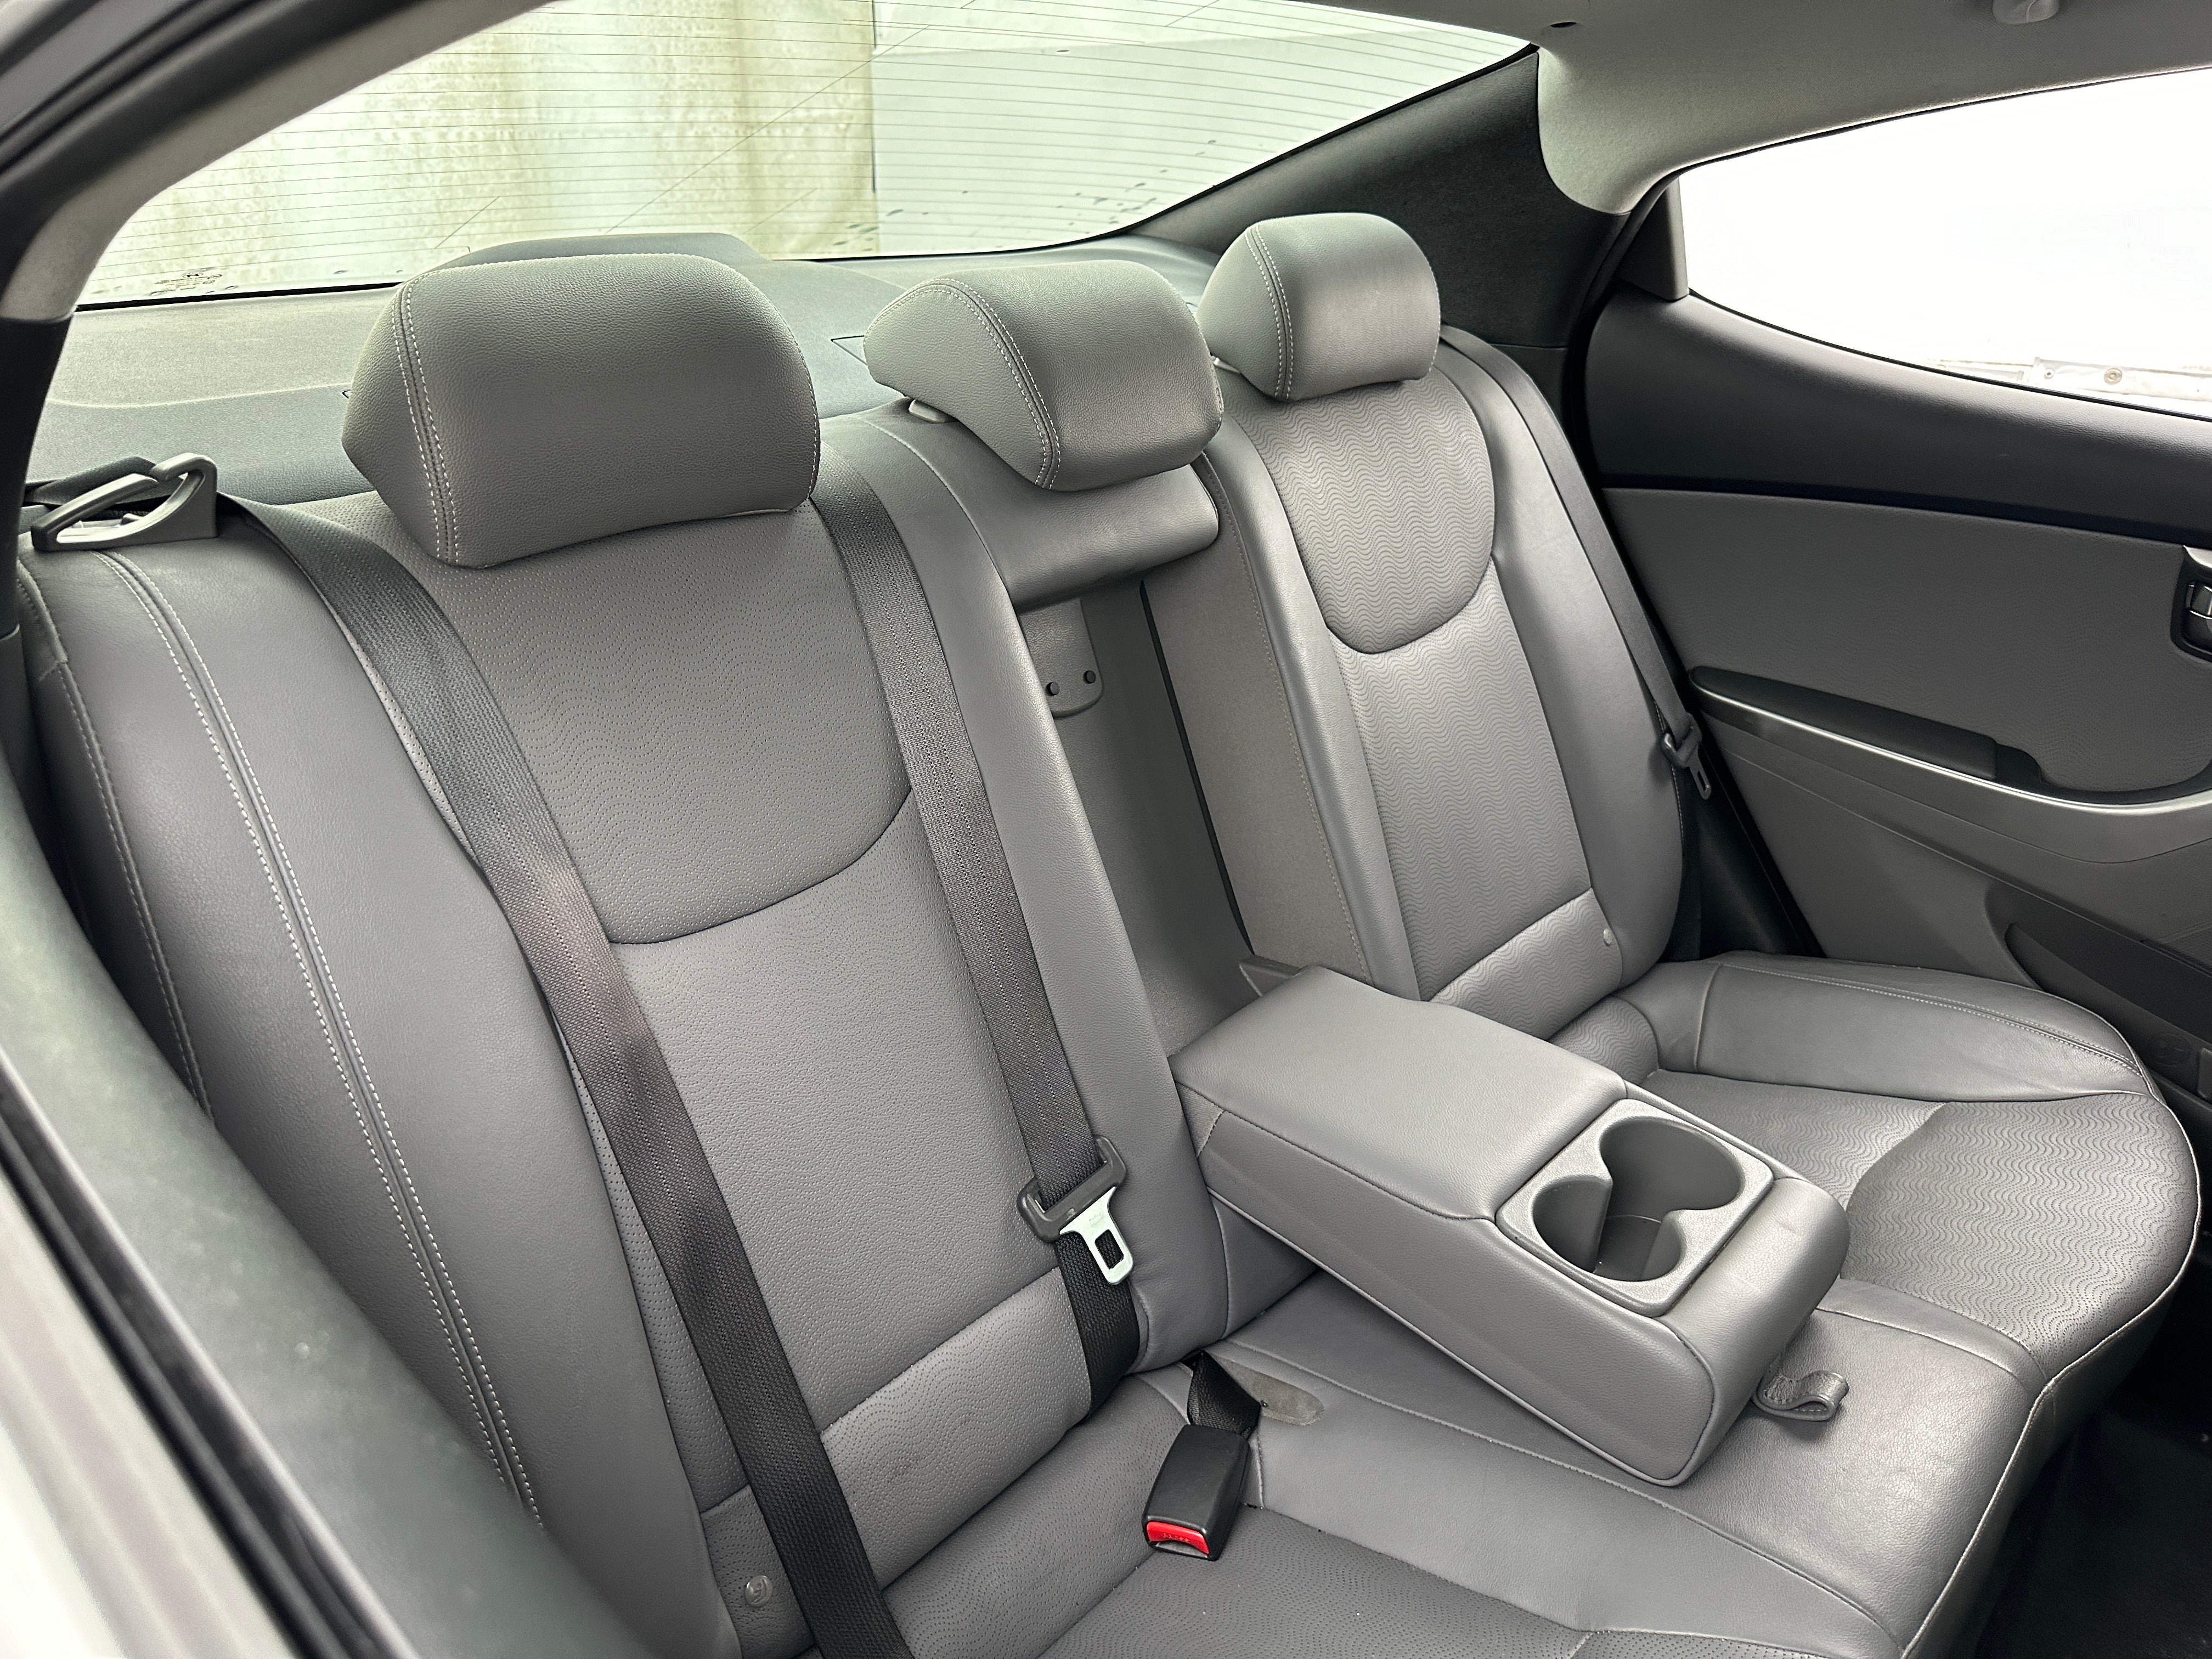 2013 Hyundai Elantra Limited Edition 6